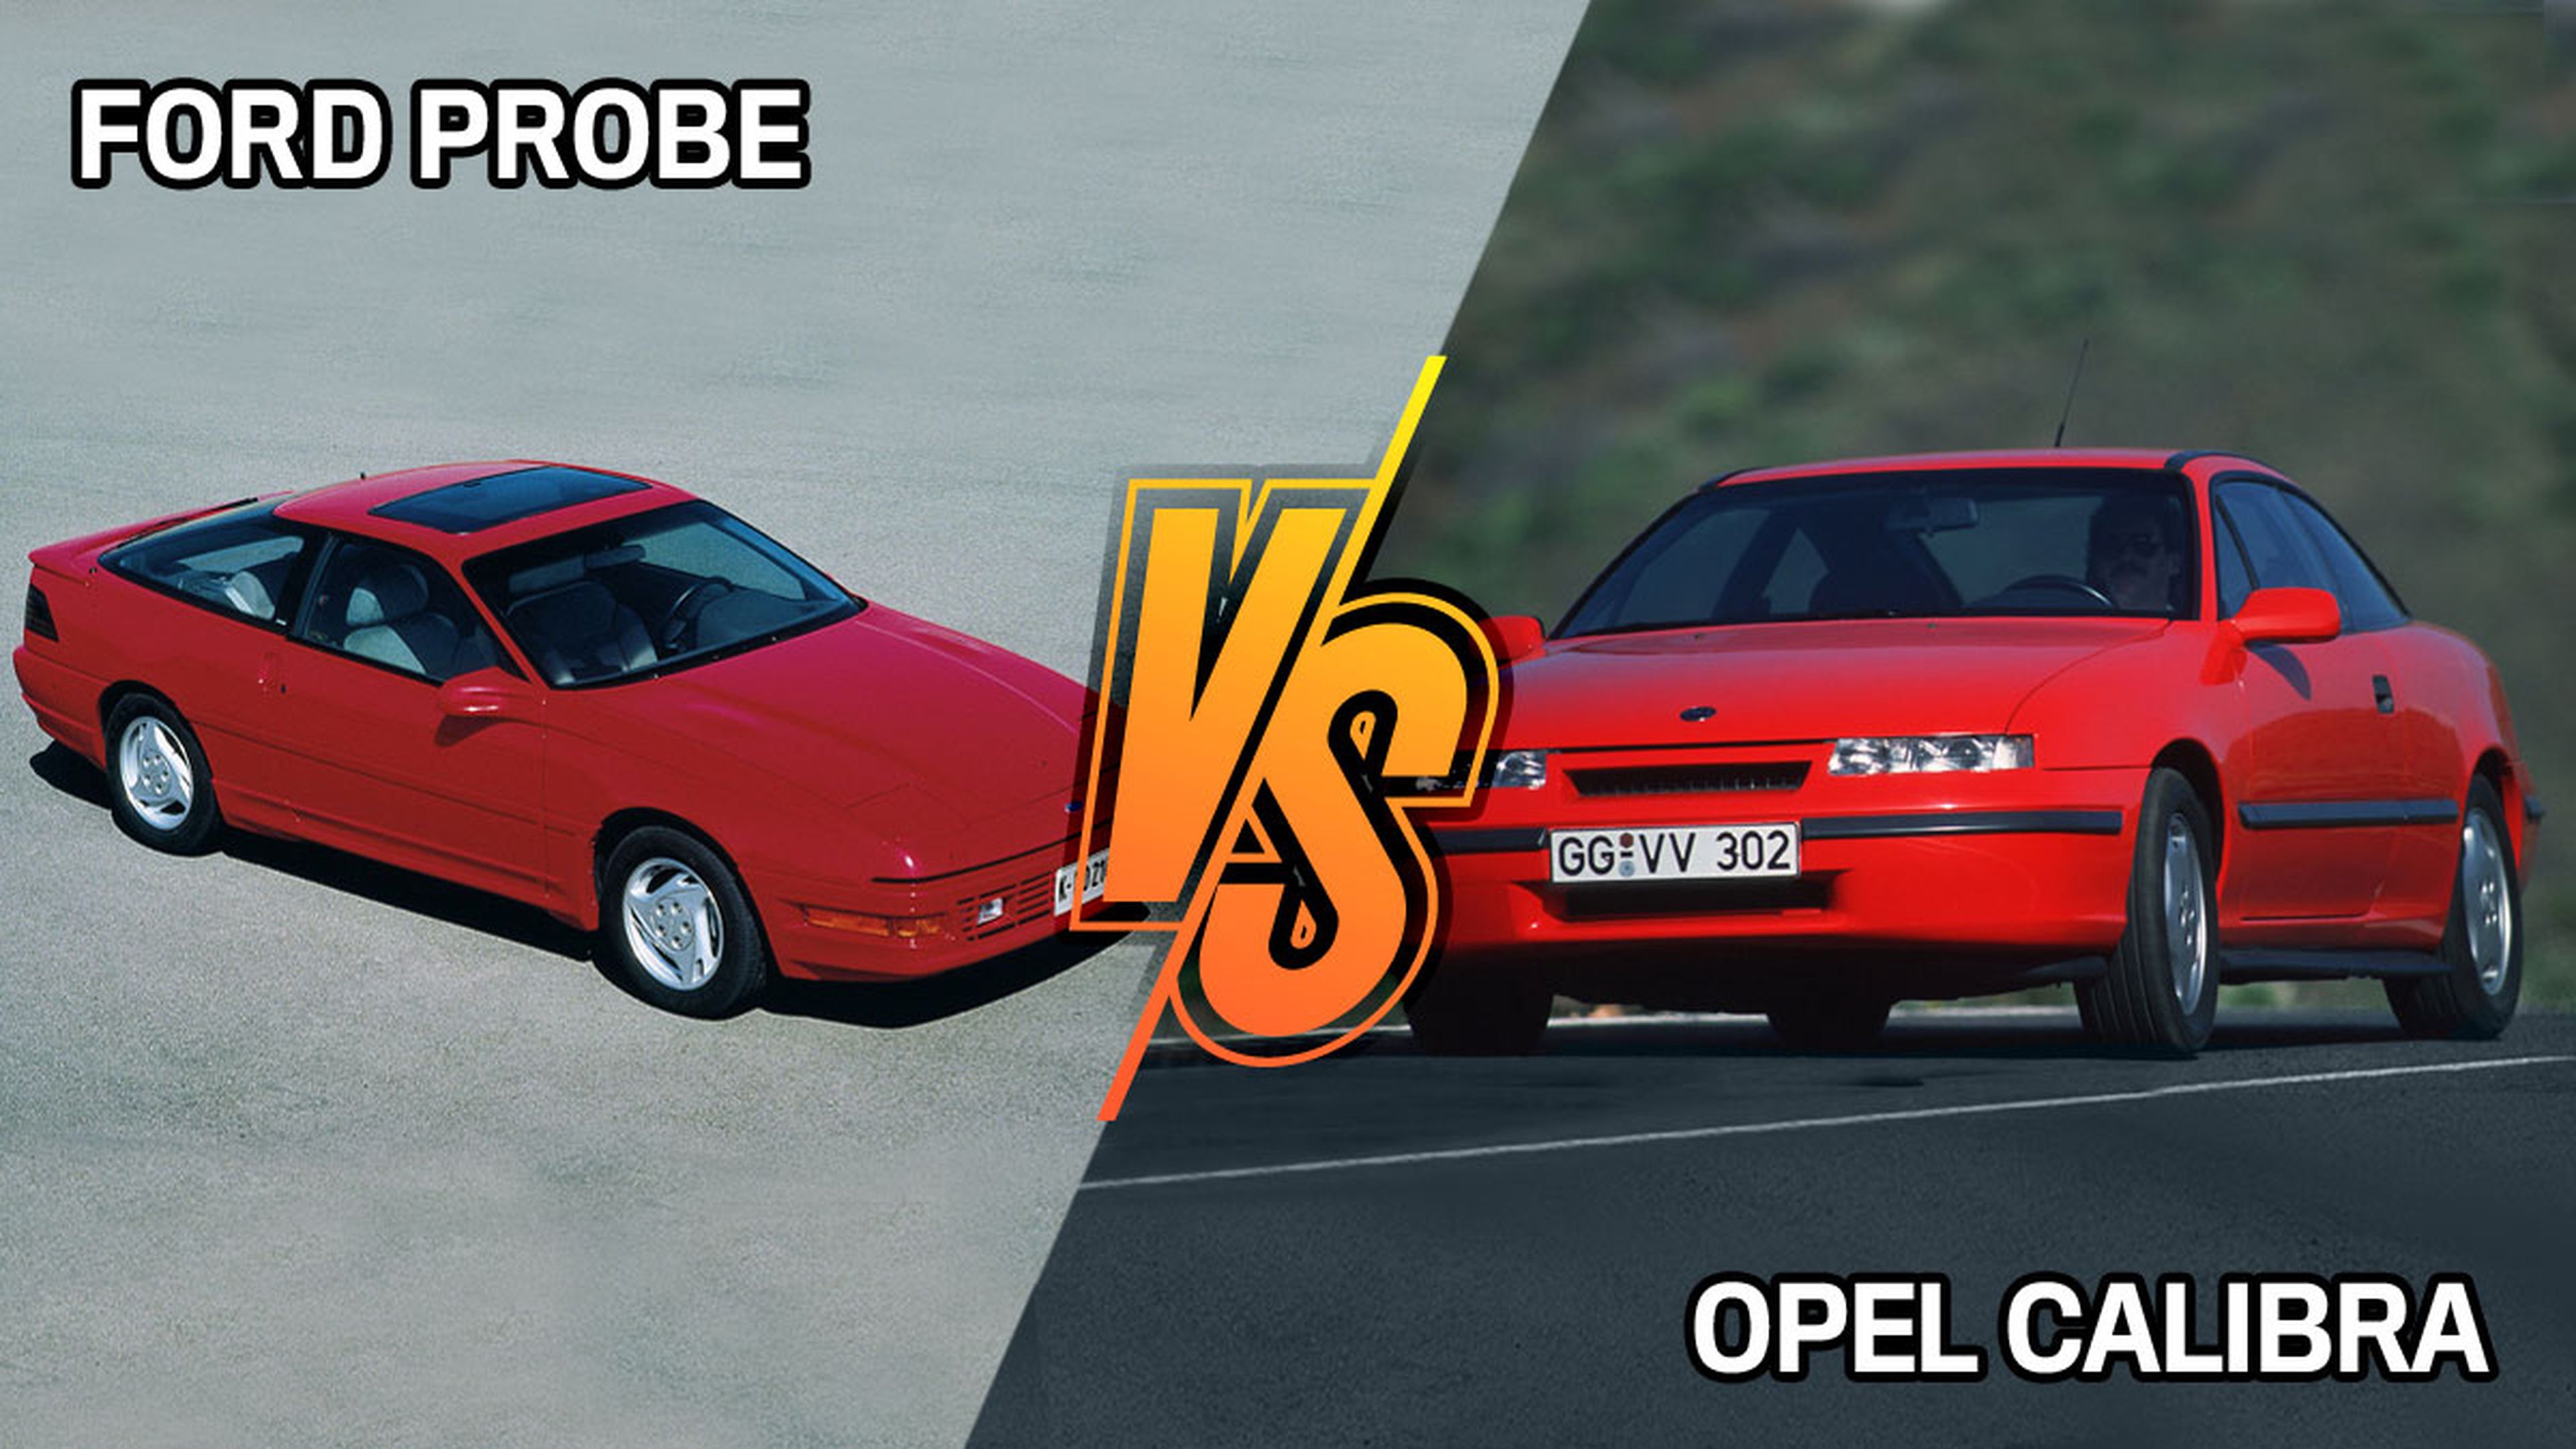 Opel Calibra vs Ford Probe